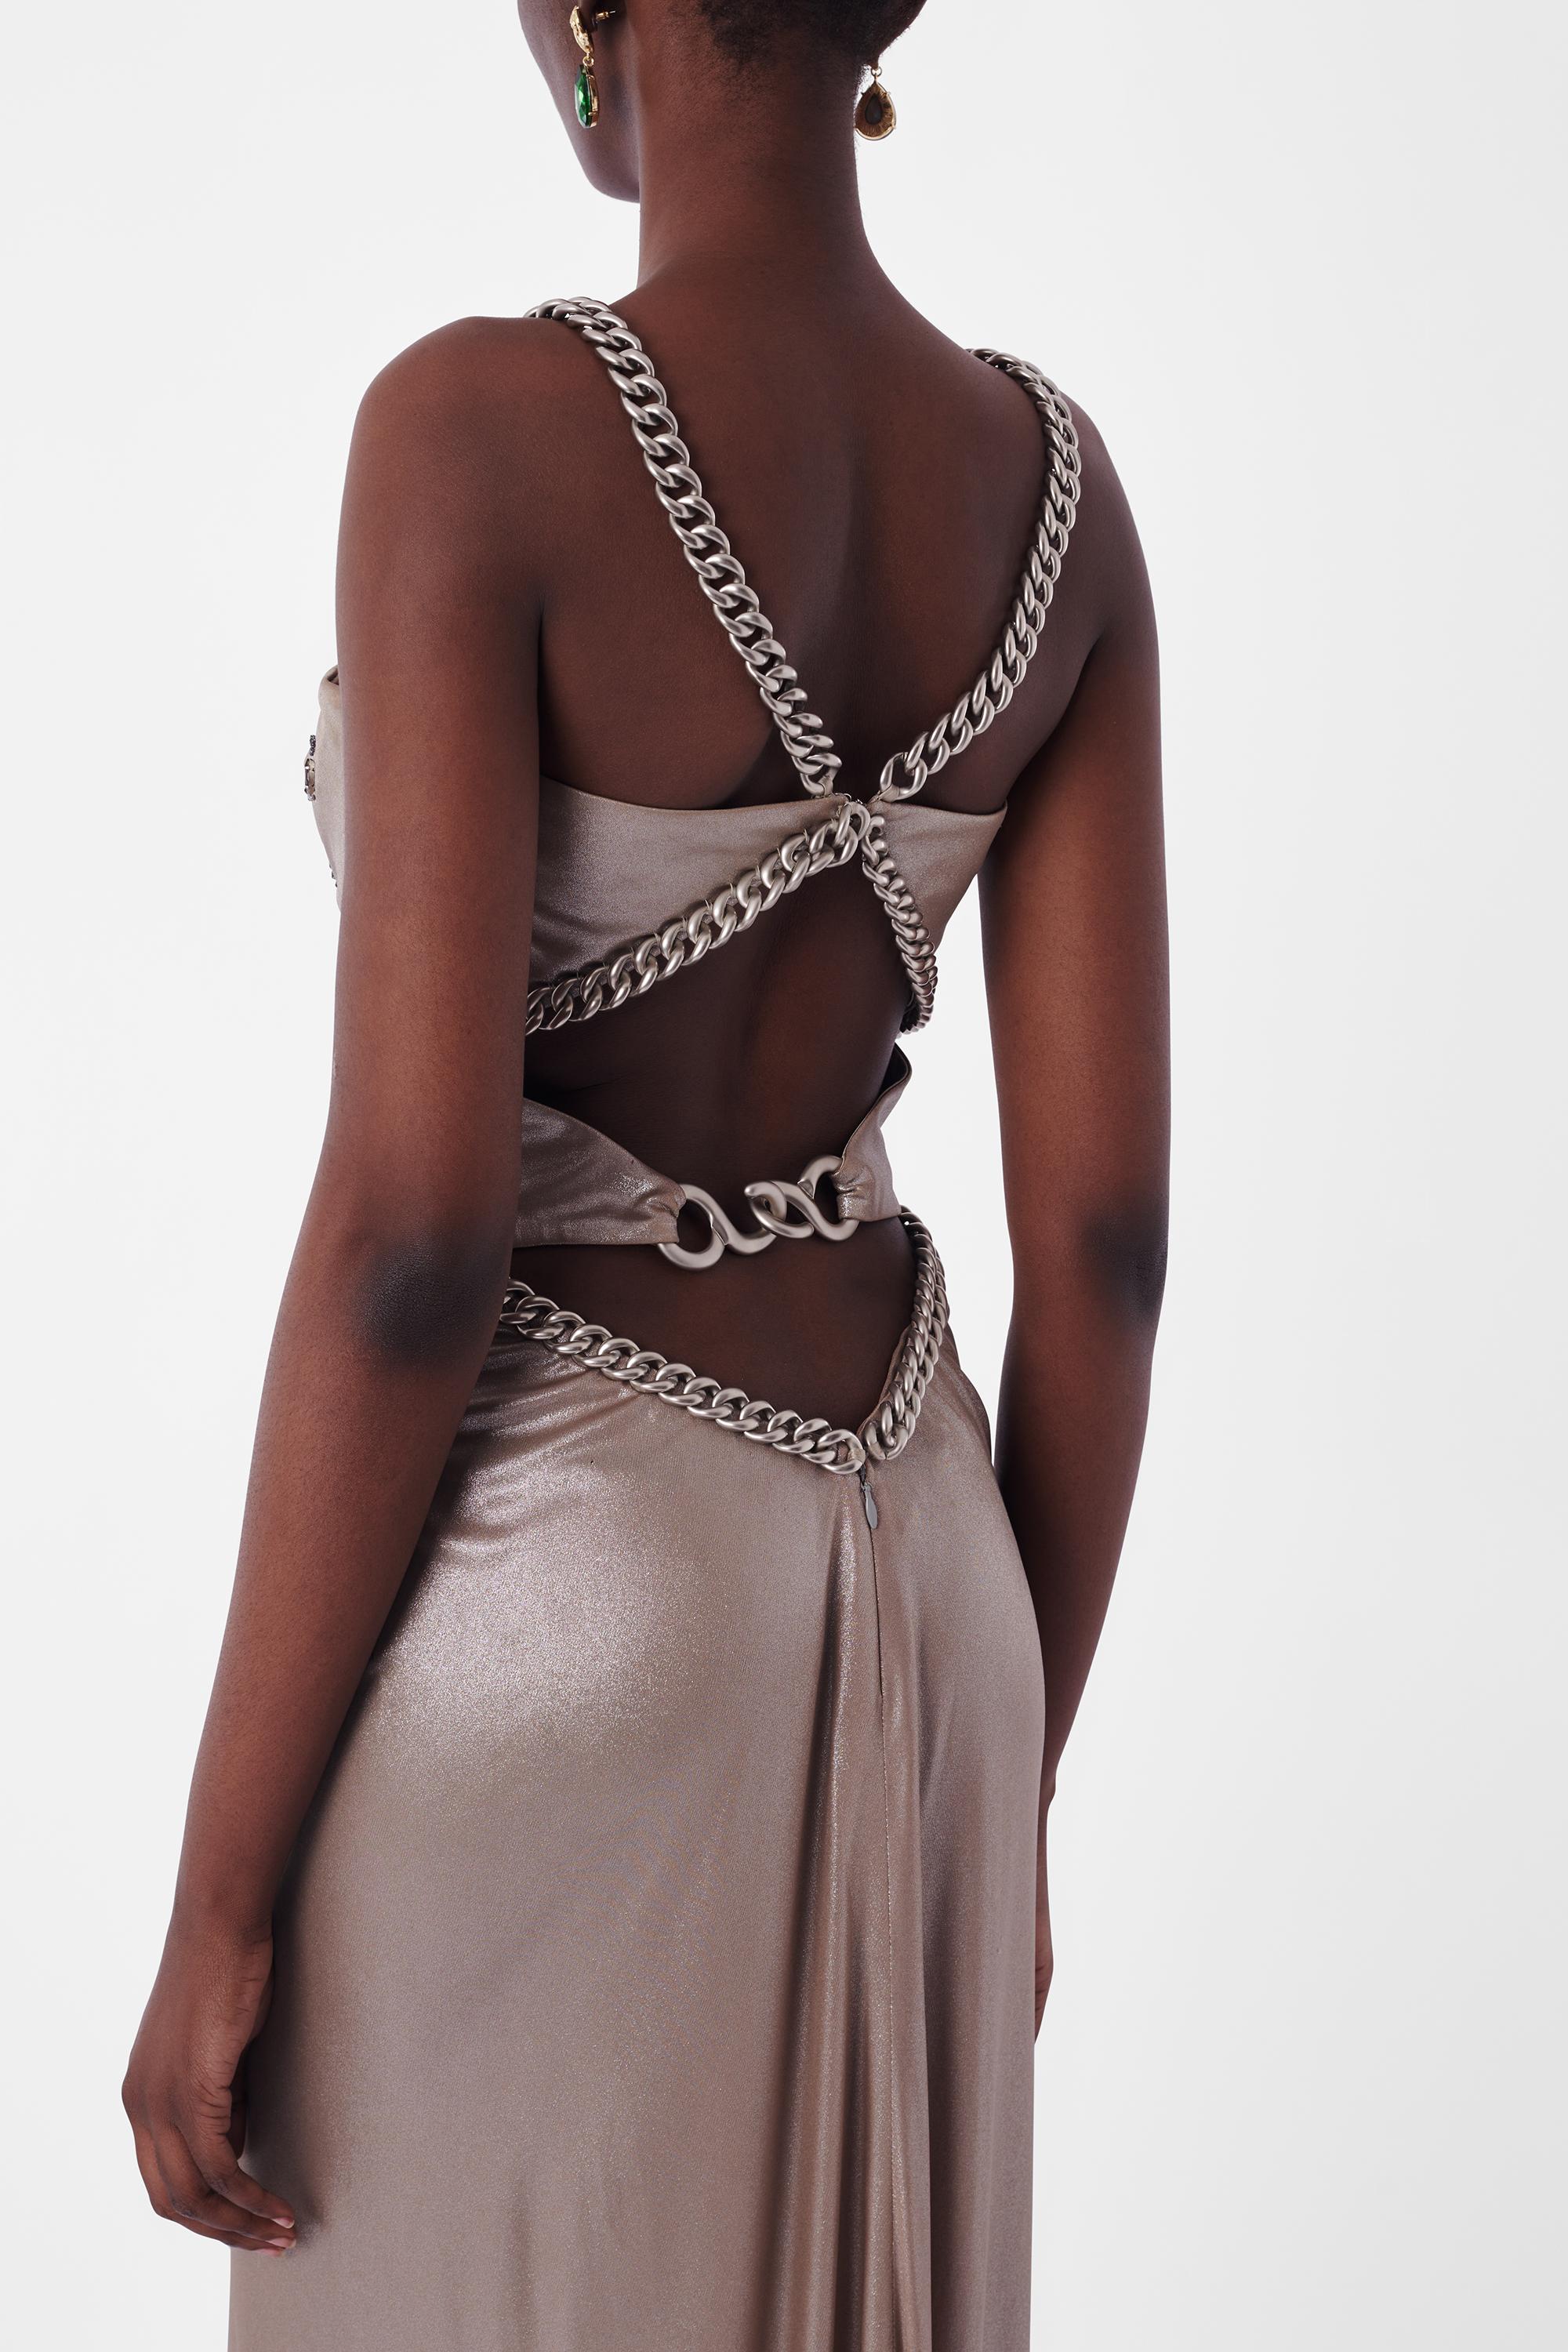 Wir freuen uns, dieses Vintage Versace 1990's Silver Metallic Chain Gown zu präsentieren. Mit silberfarbenen, gekreuzten Rückenträgern und Taillengürtel, offenem Rückenausschnitt, silberfarbenen Perlenstickereien auf der Brust und Maxilänge. In